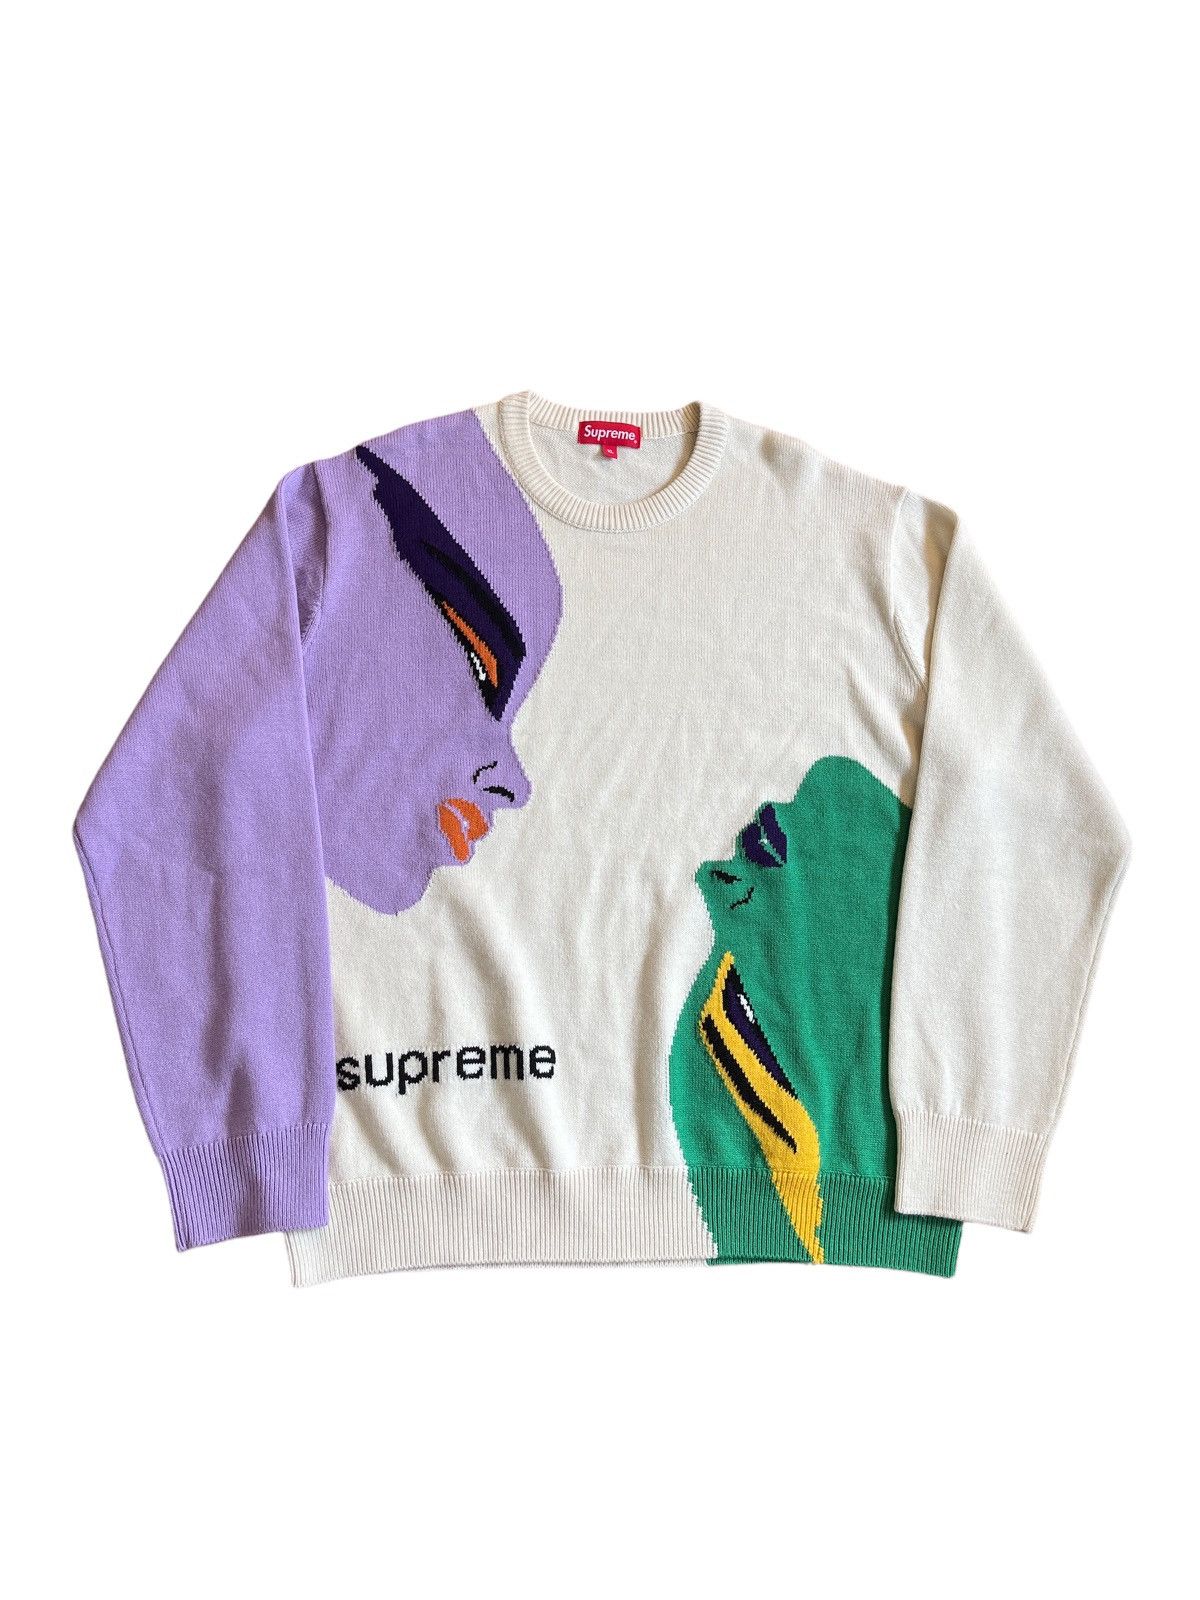 Supreme Supreme Faces Sweater Cream | Grailed